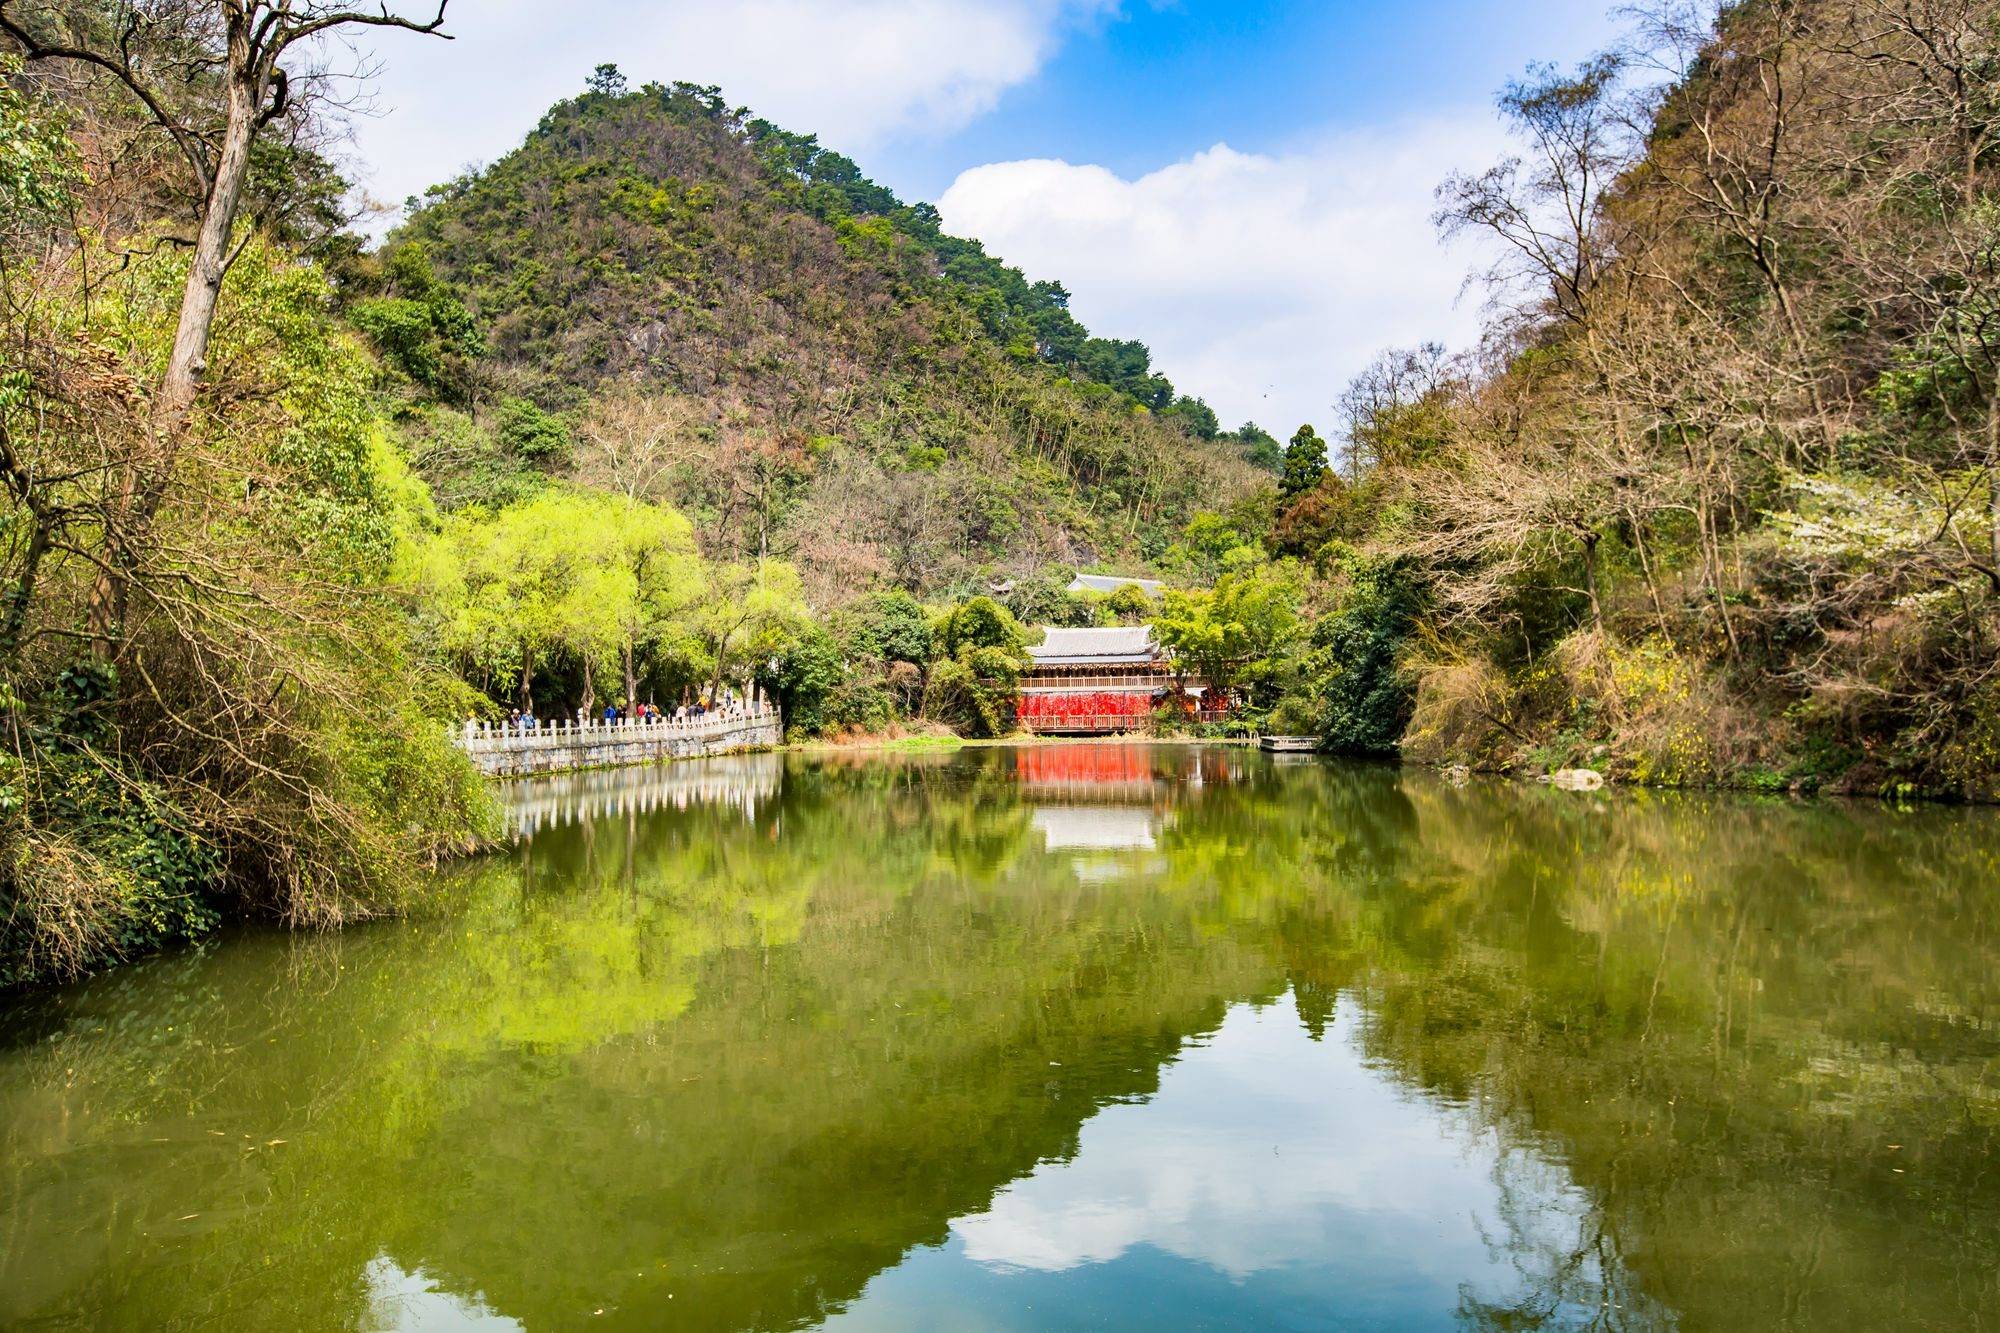 贵阳黔灵山公园,集自然风光,民俗风情于一体,是休闲游的好去处